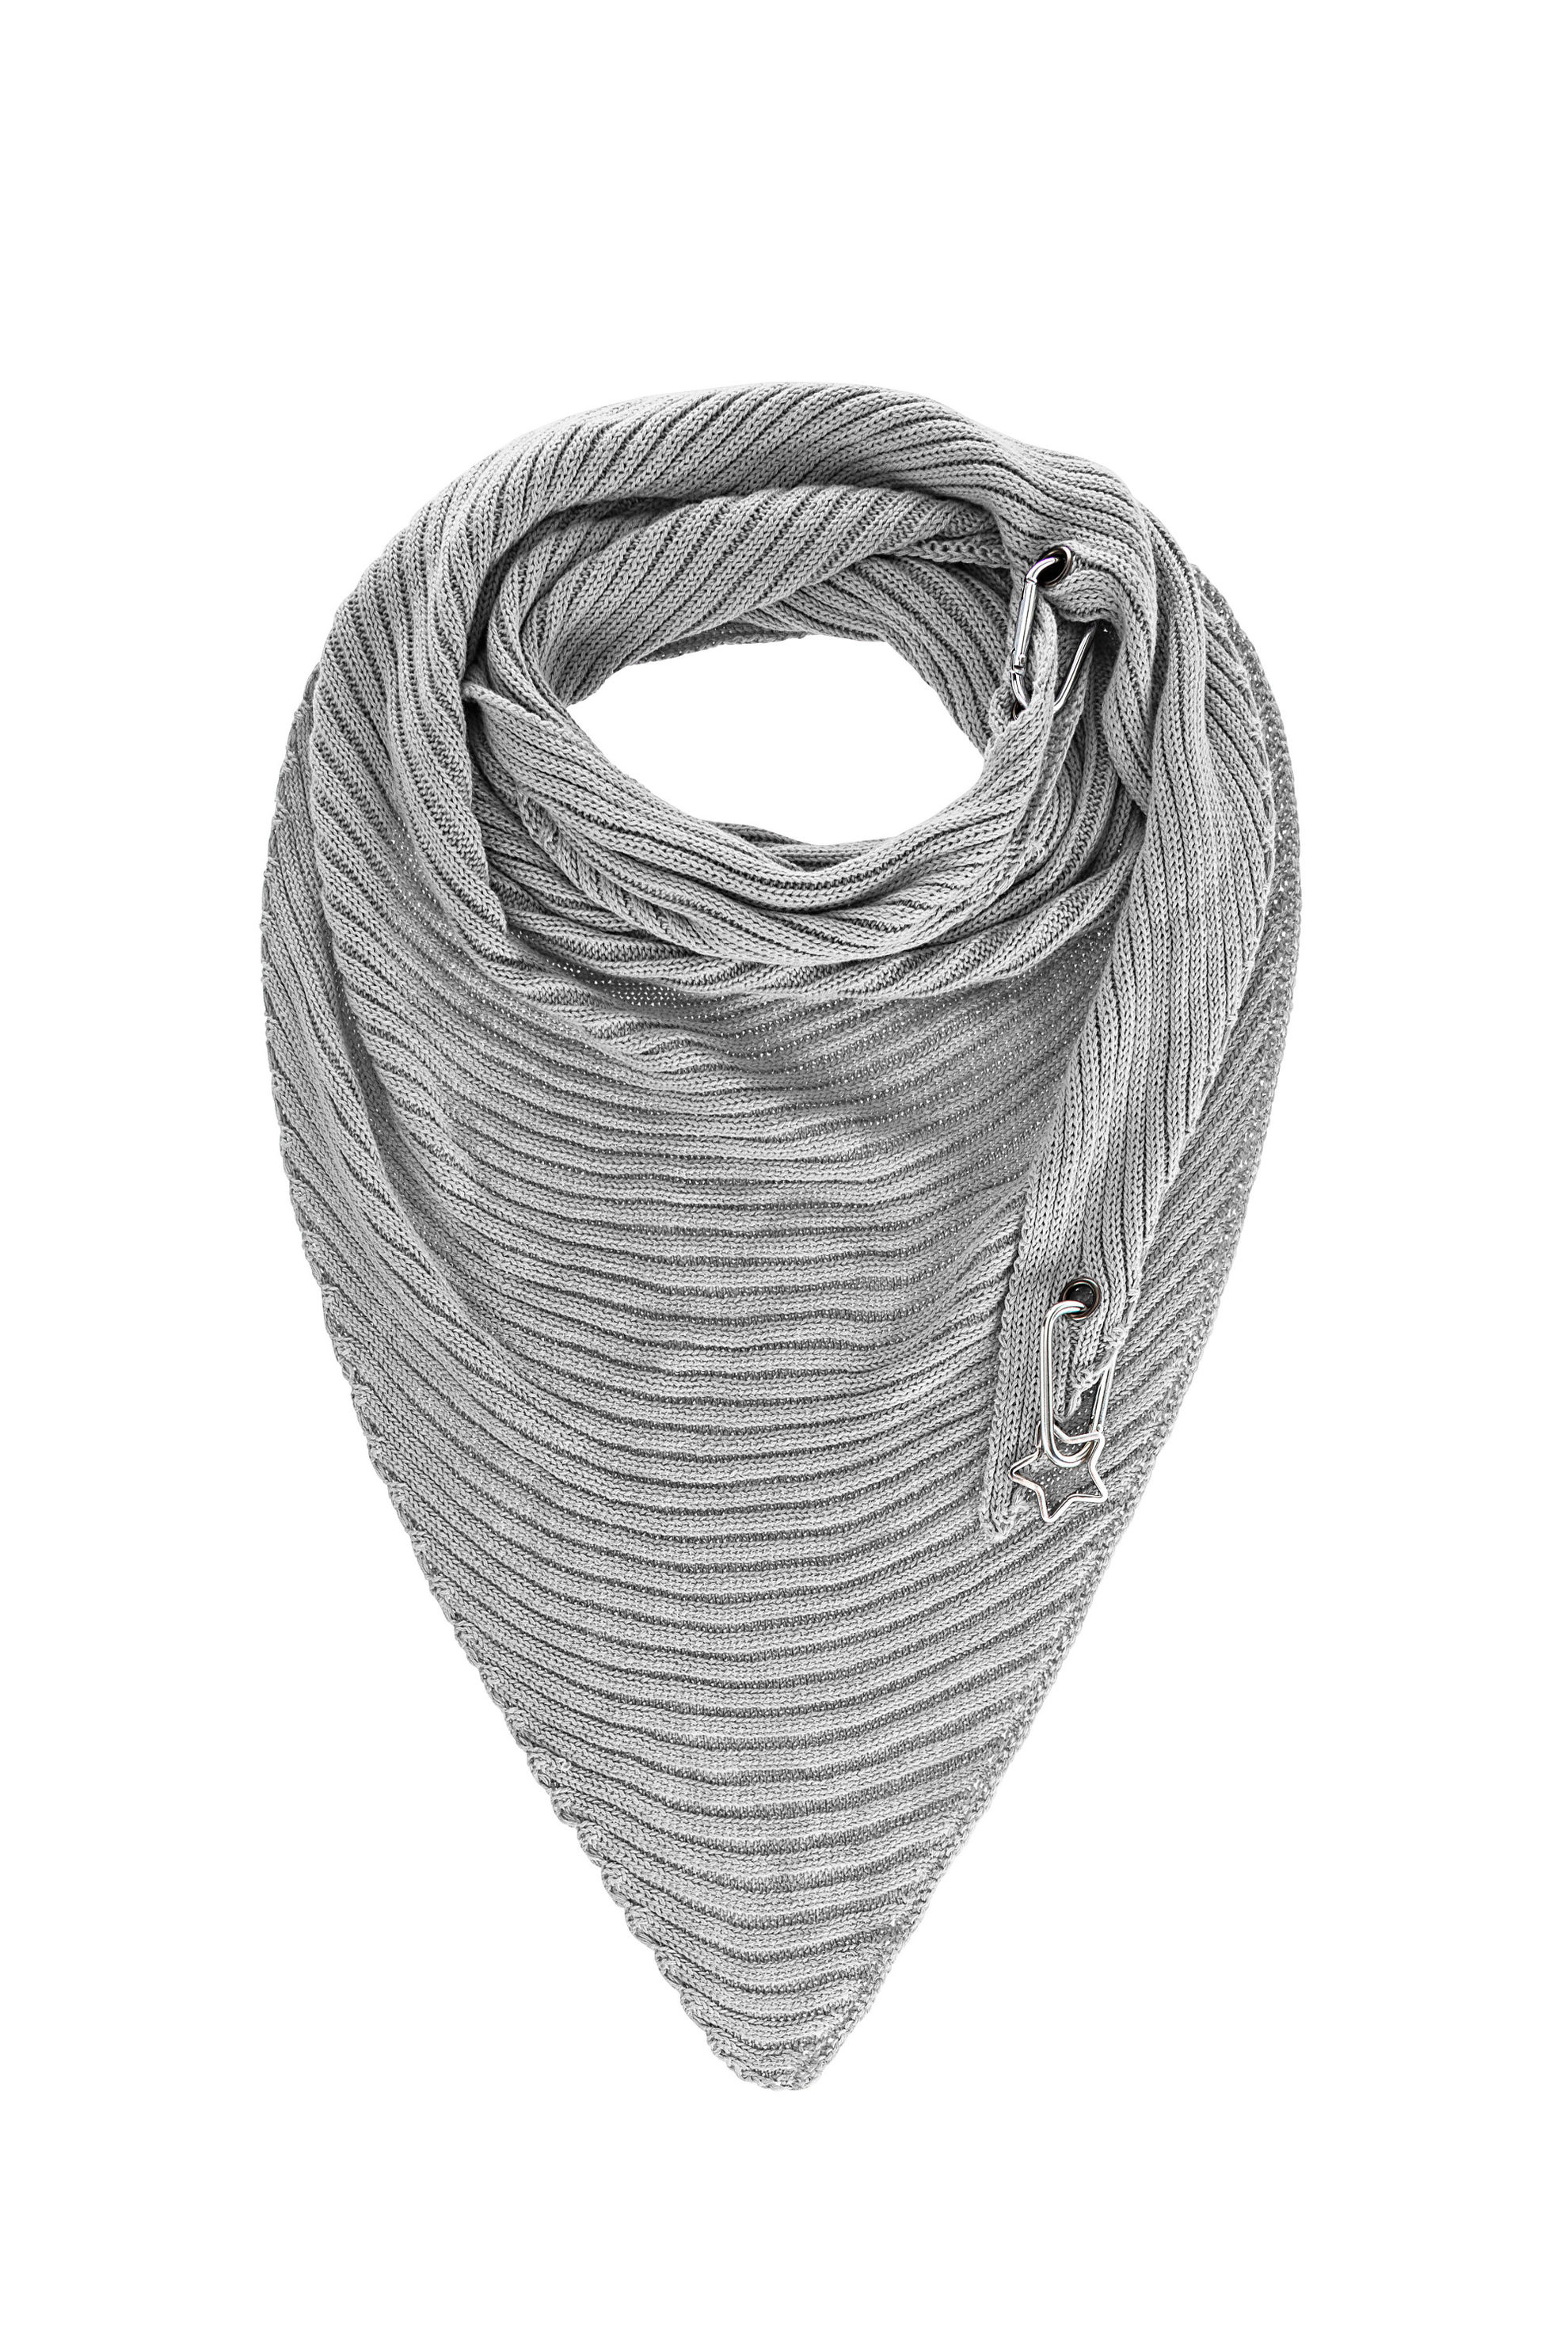 Schal Trasa aus Baumwolle, 155x75 cm Farbe: grau | Weltbild.de